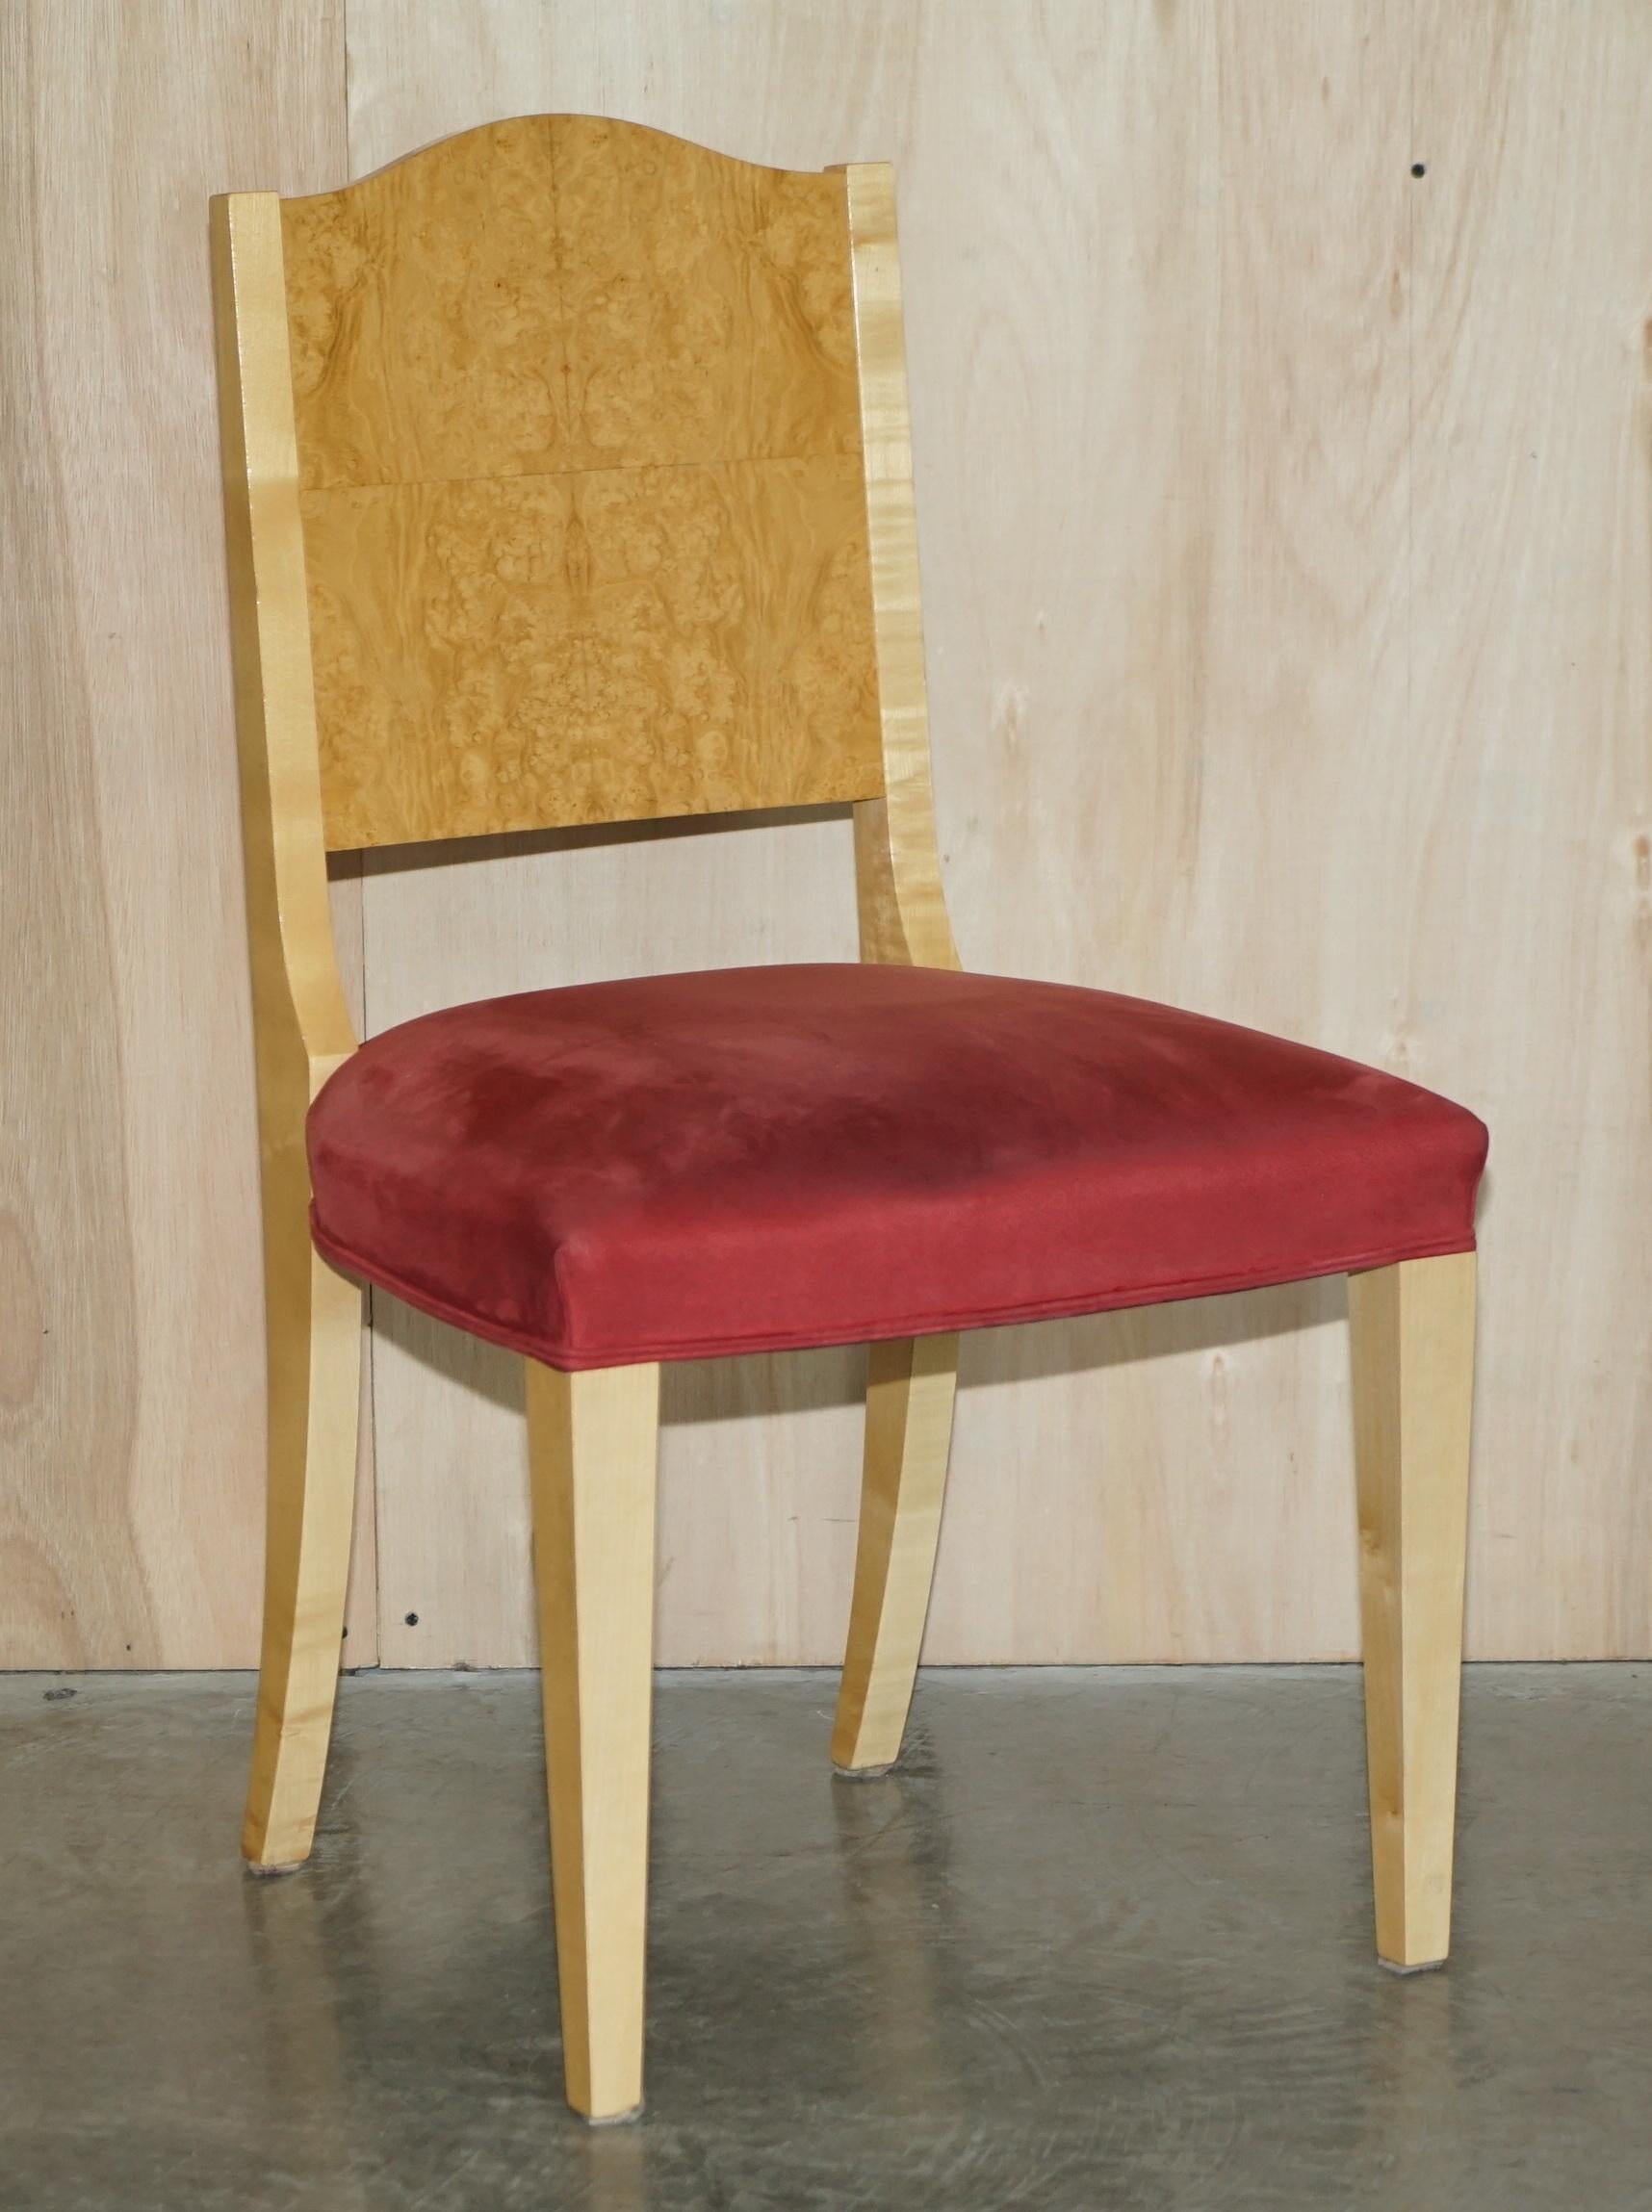 Wir freuen uns sehr, dieses atemberaubende Paar originaler Viscount David Linley Beistellstühle aus Sycamore-Holz zum Verkauf anbieten zu können

Ein sehr gut aussehendes und gut gemachtes Paar Designer-Seitenstühle, sie sind ziemlich schwer, da